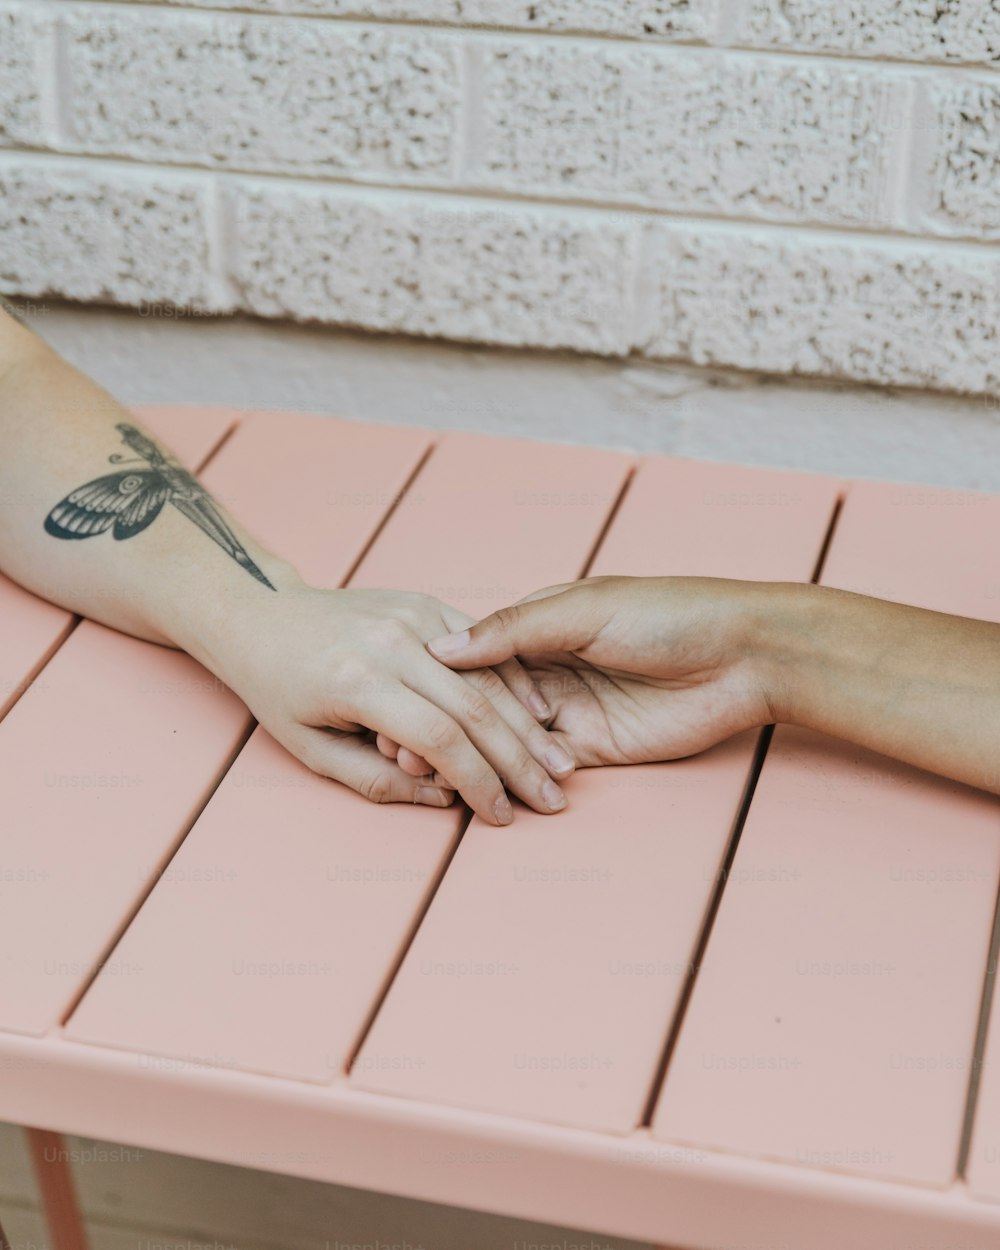 Una persona con un tatuaje de libélula en el brazo sentada en un banco rosa